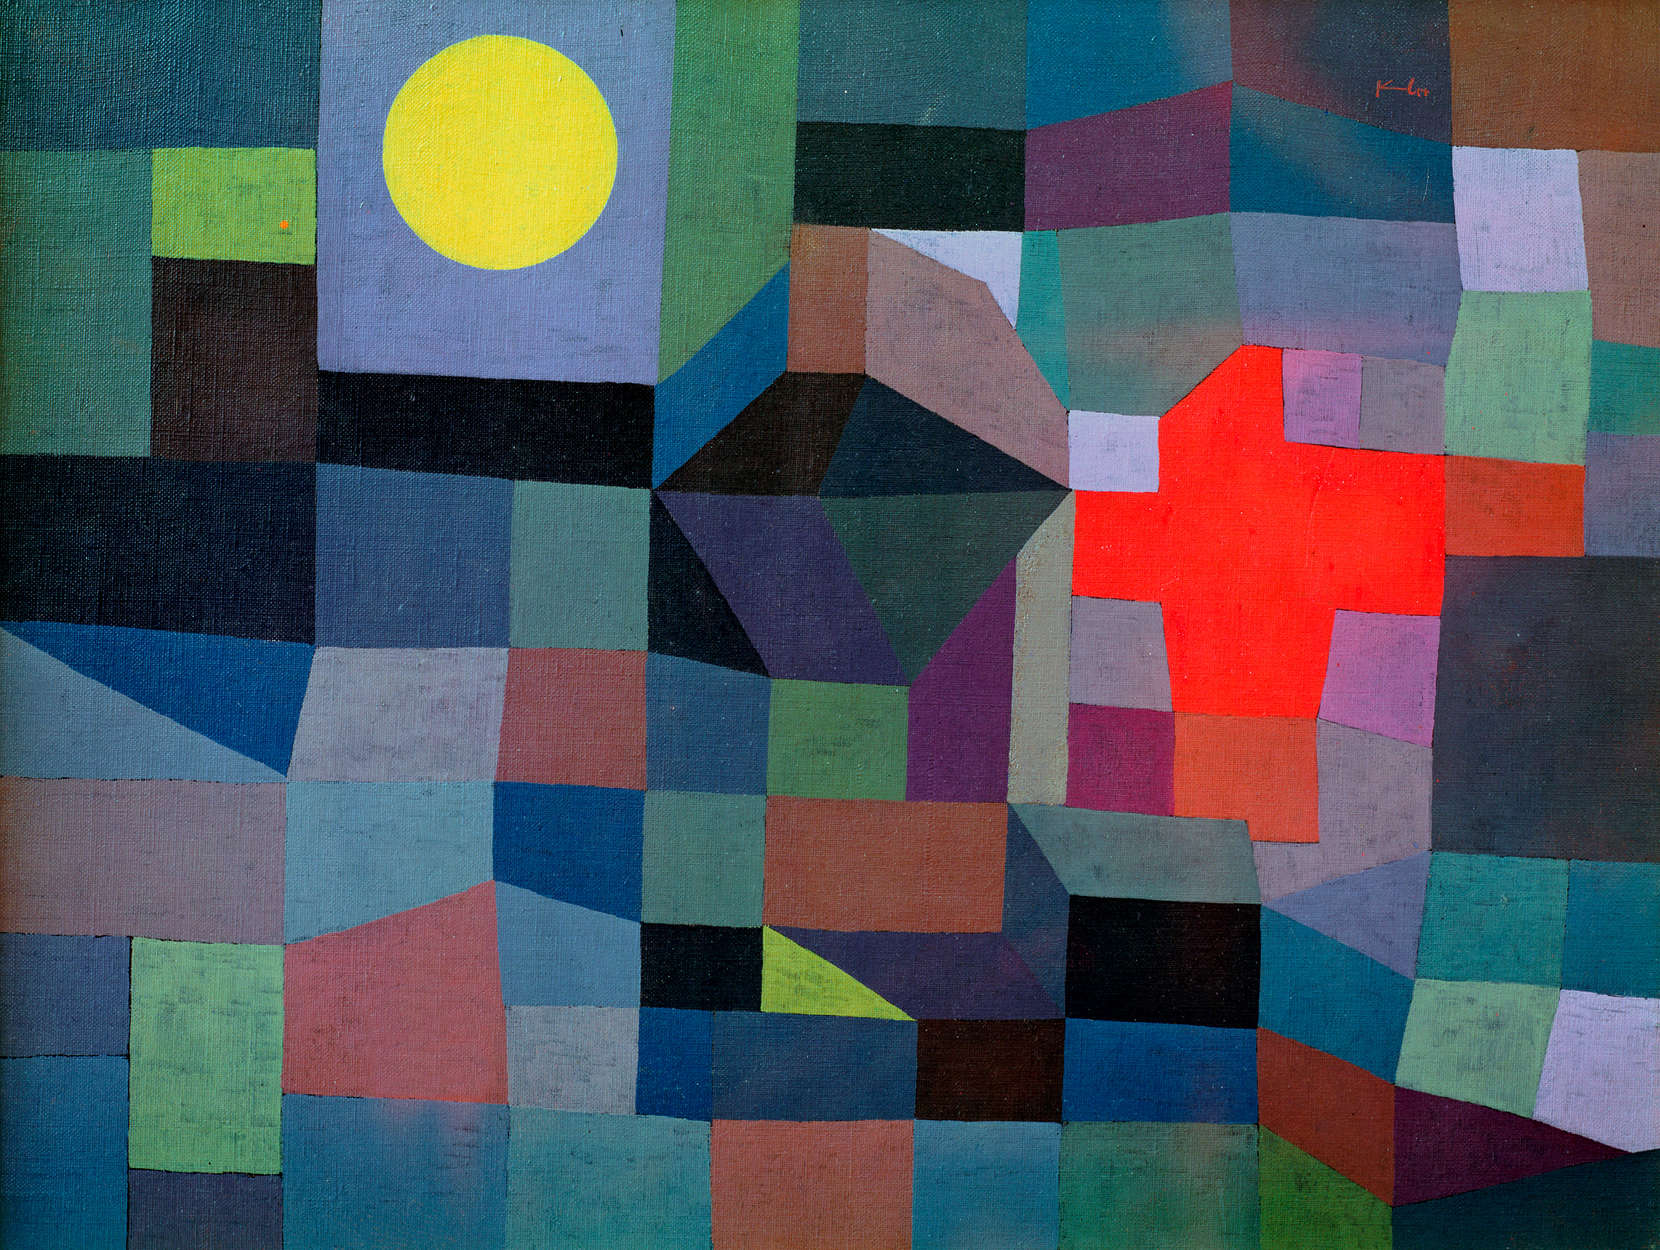             Fototapete "Feuer bei Vollmond" von Paul Klee
        